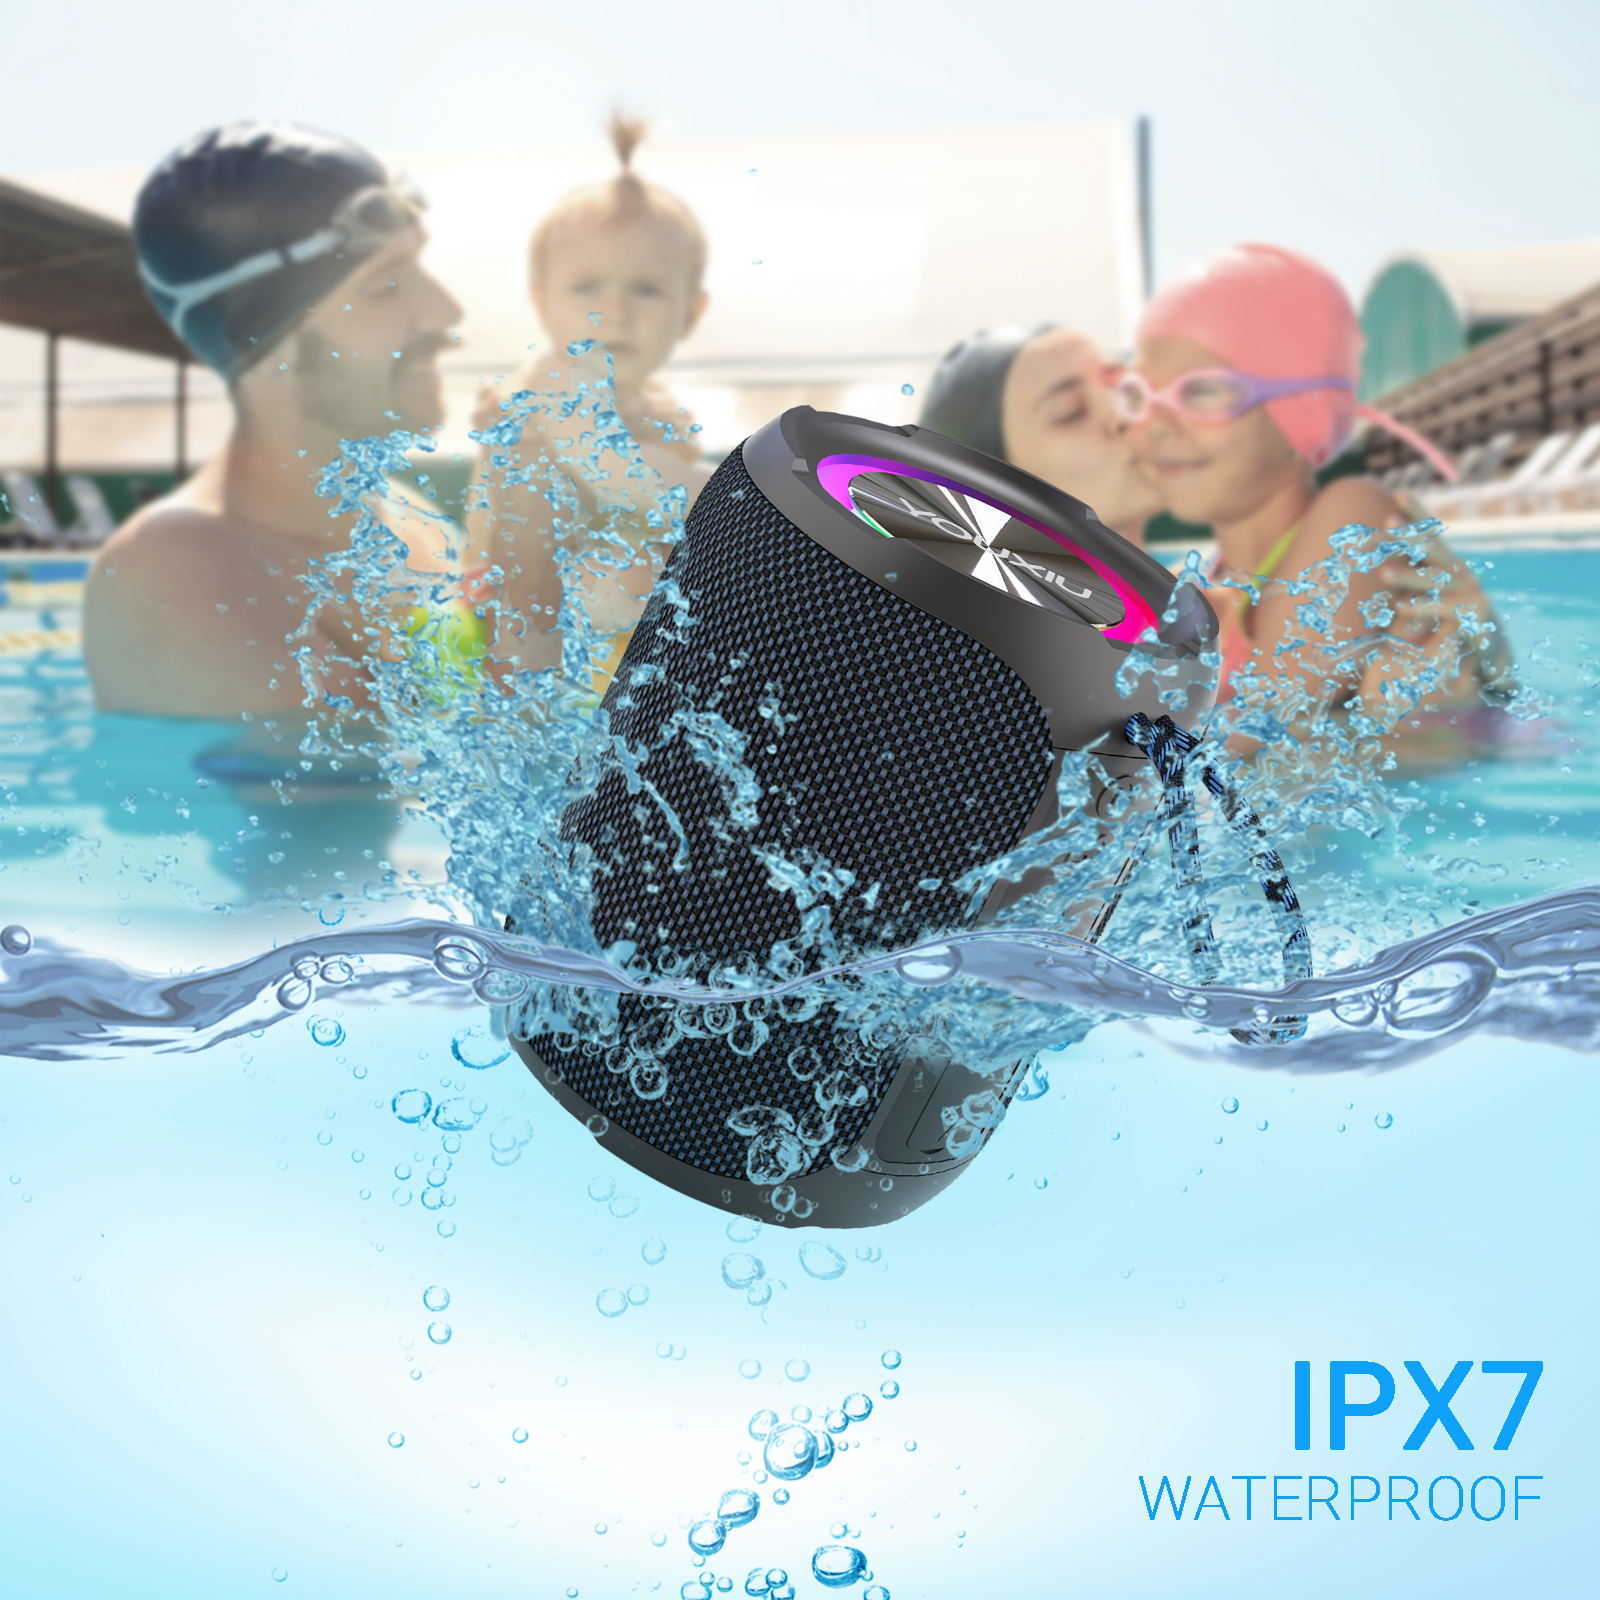 Haut-parleurs portables YOUXIU 40W haut-parleur Bluetooth Portable caisson de basses 360 degrés stéréo Surround boîte de son étanche IPX7 Support TWS USB